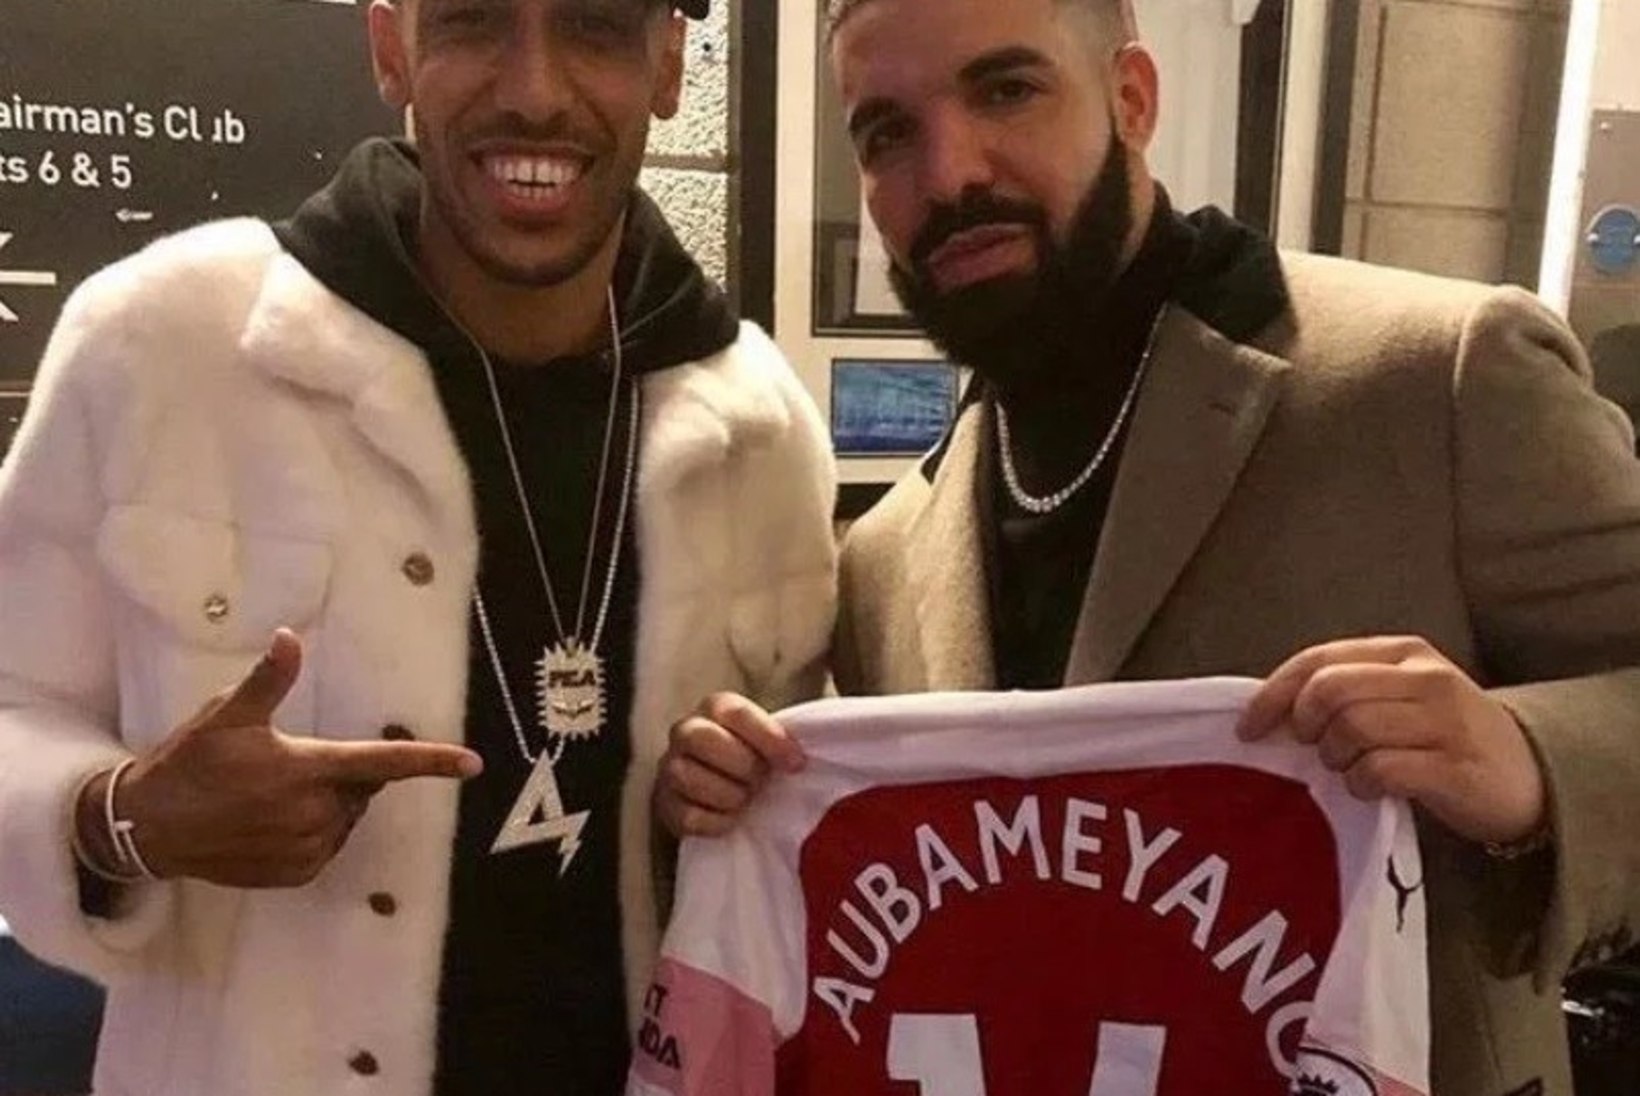 NEEDUS! Itaalia suurklubi soovitab oma mängijatel superstaar Drake'i vältida nagu katku